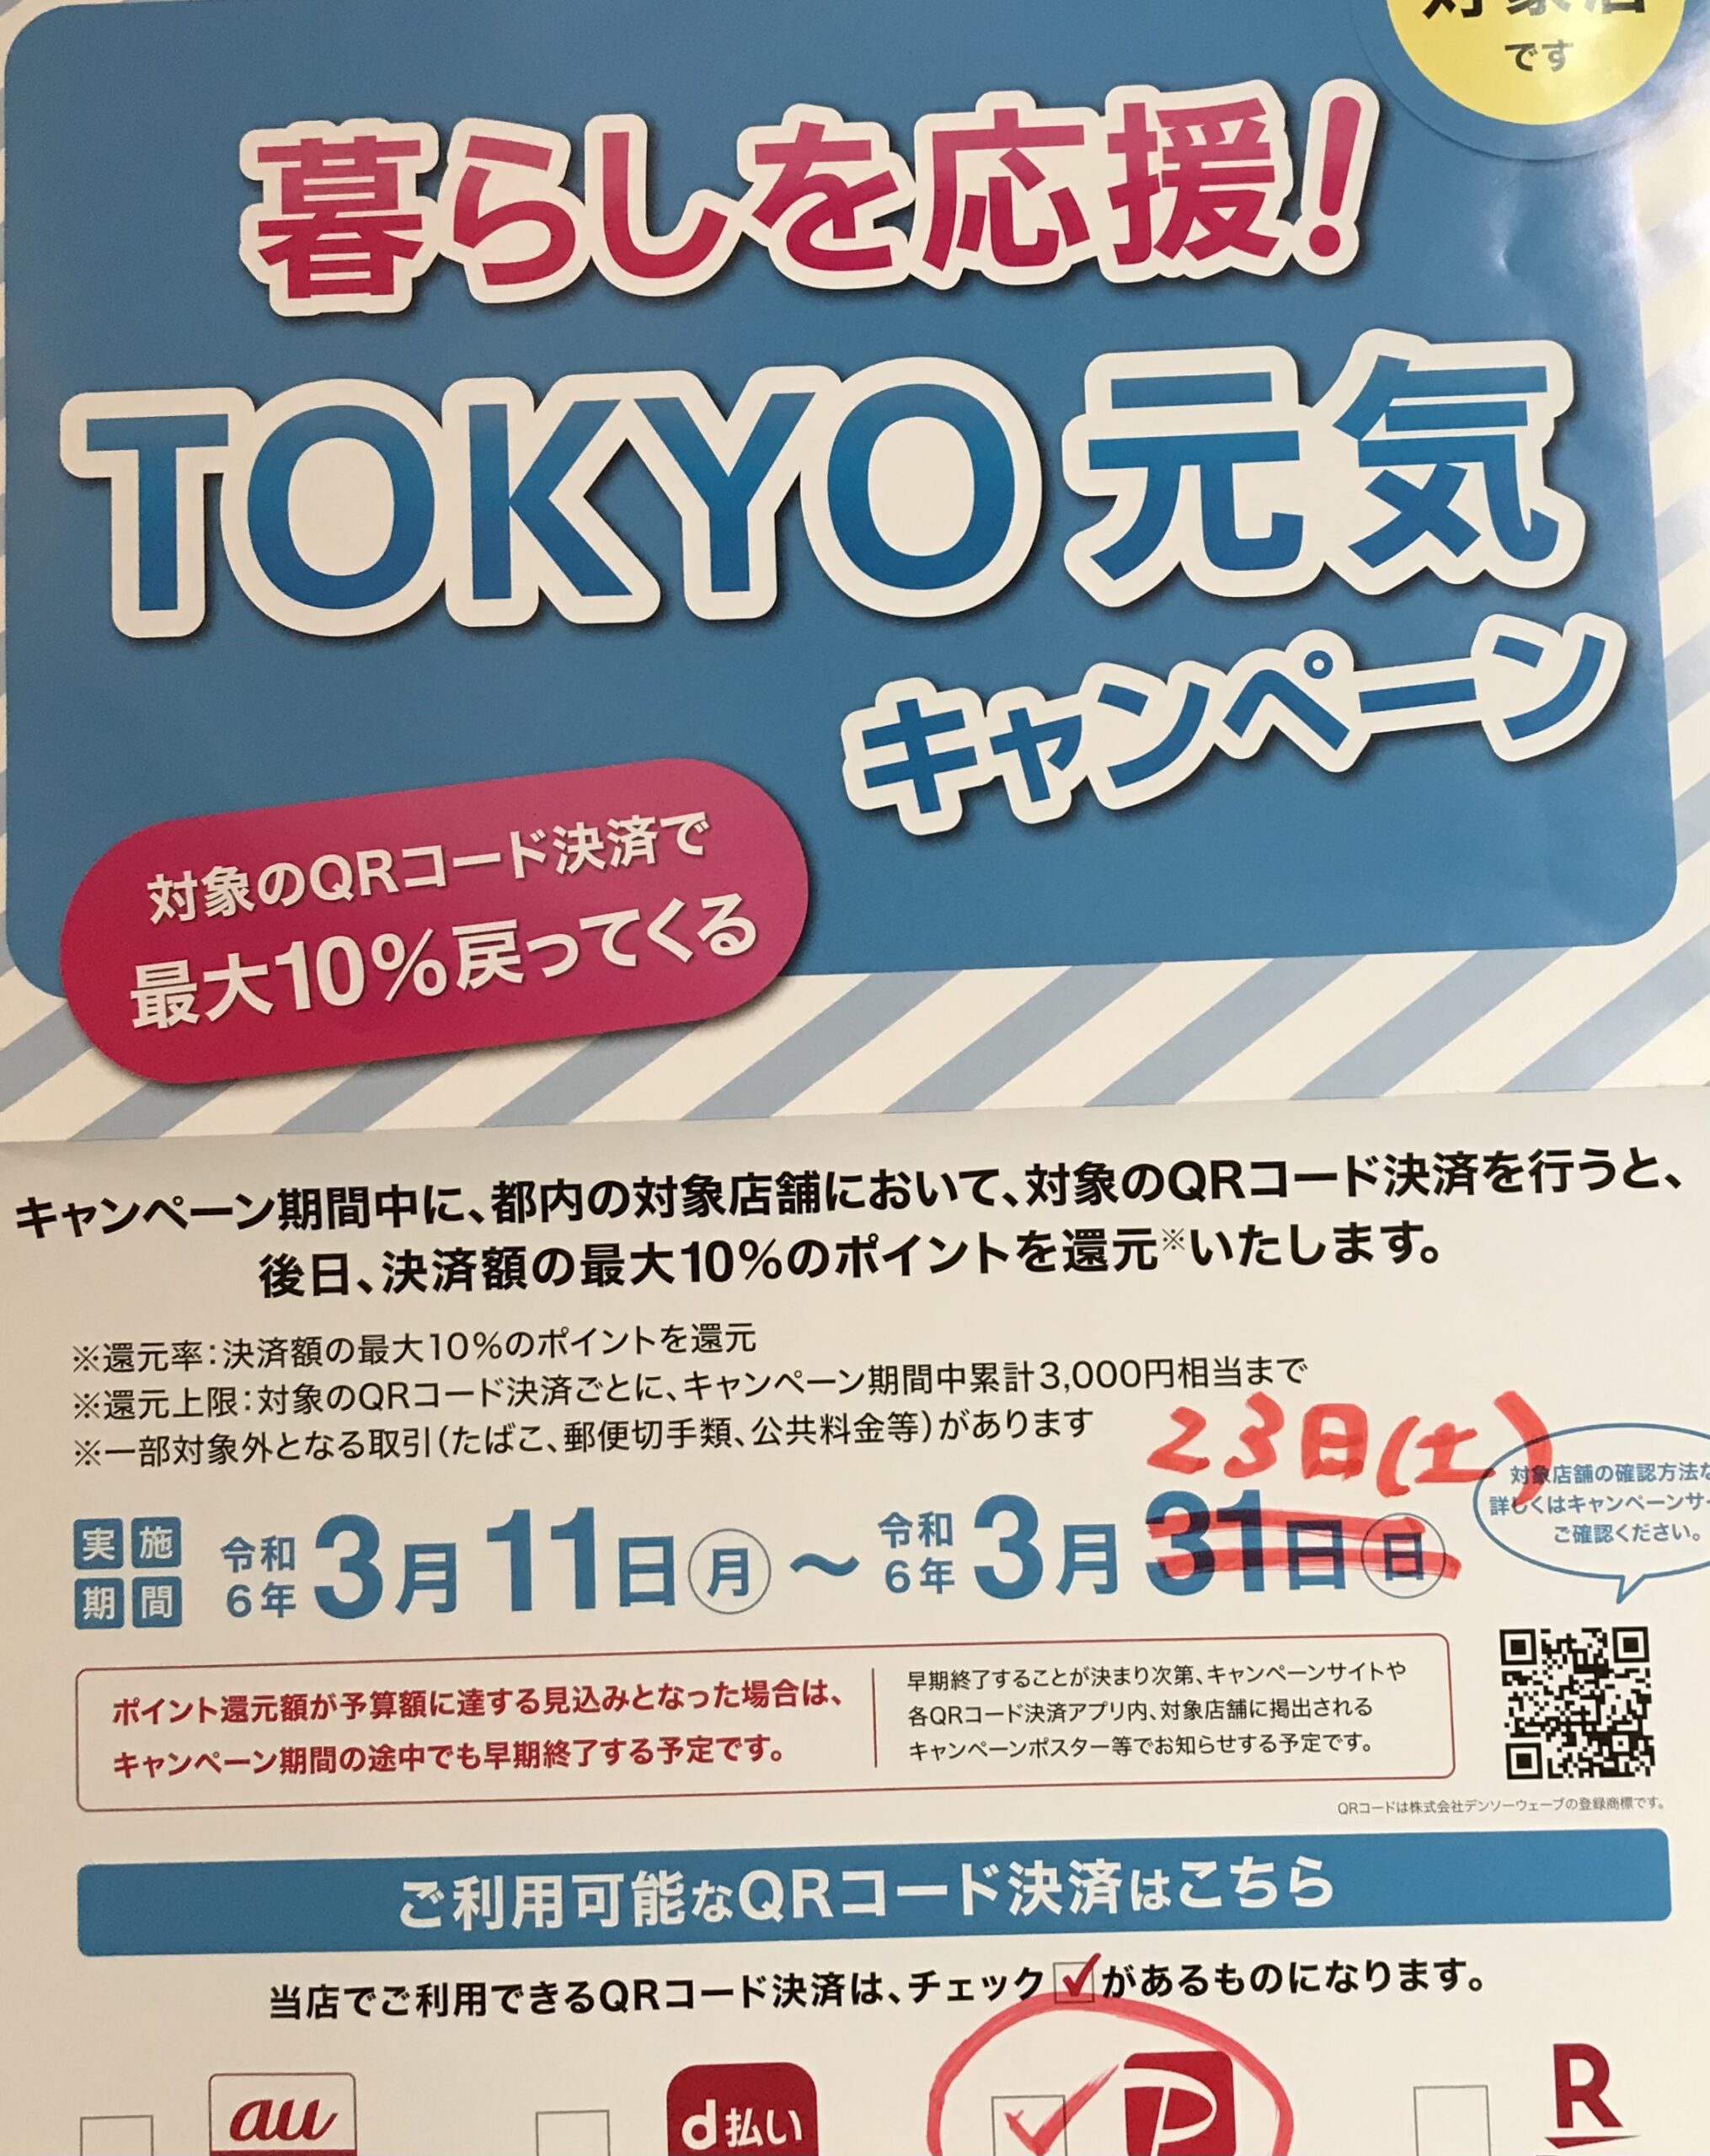 東京元気キャンペーン、早期終了のお知らせ